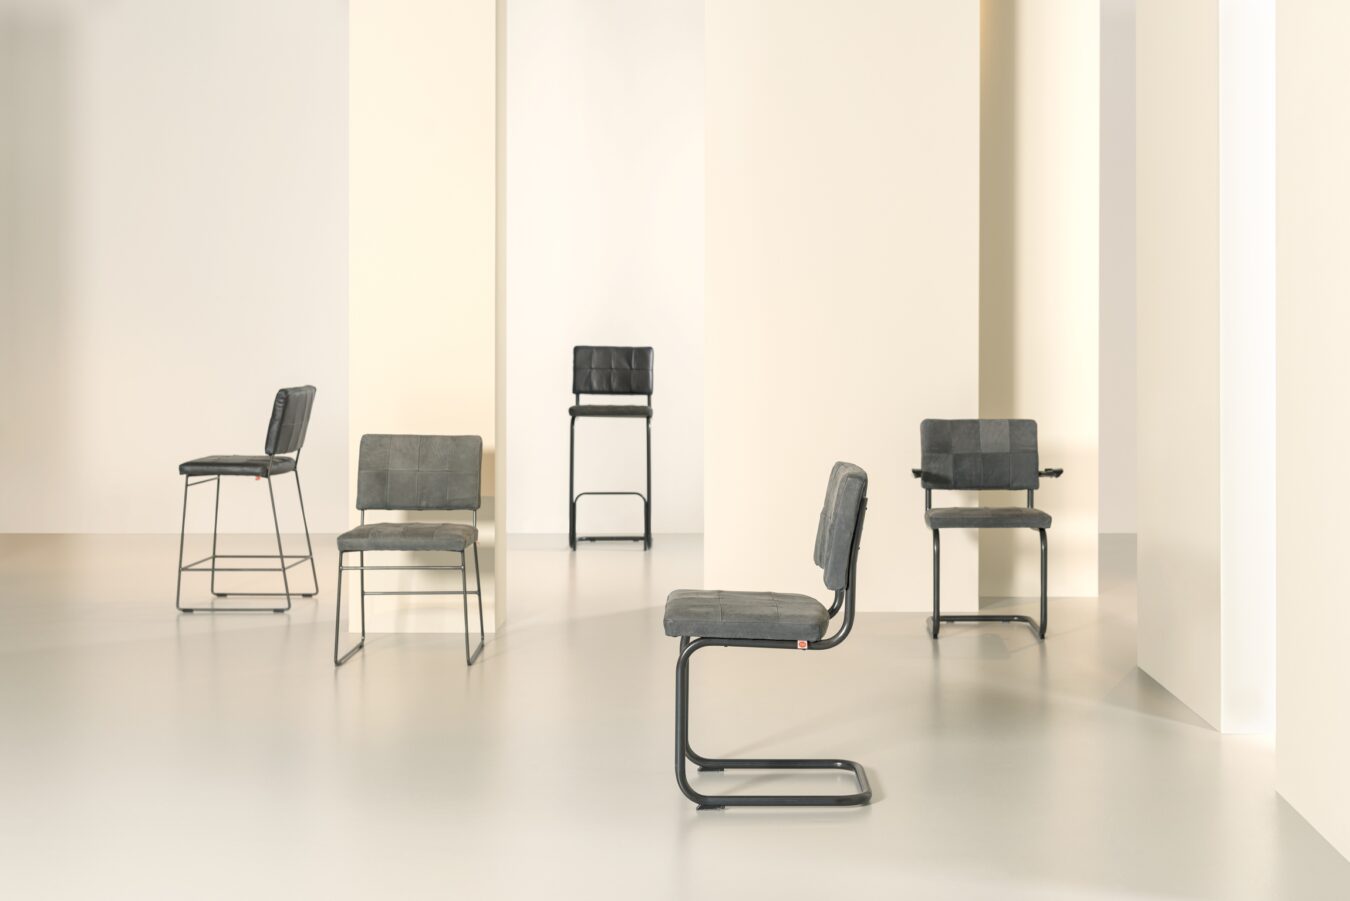 Koop Mila chair by Jess Design